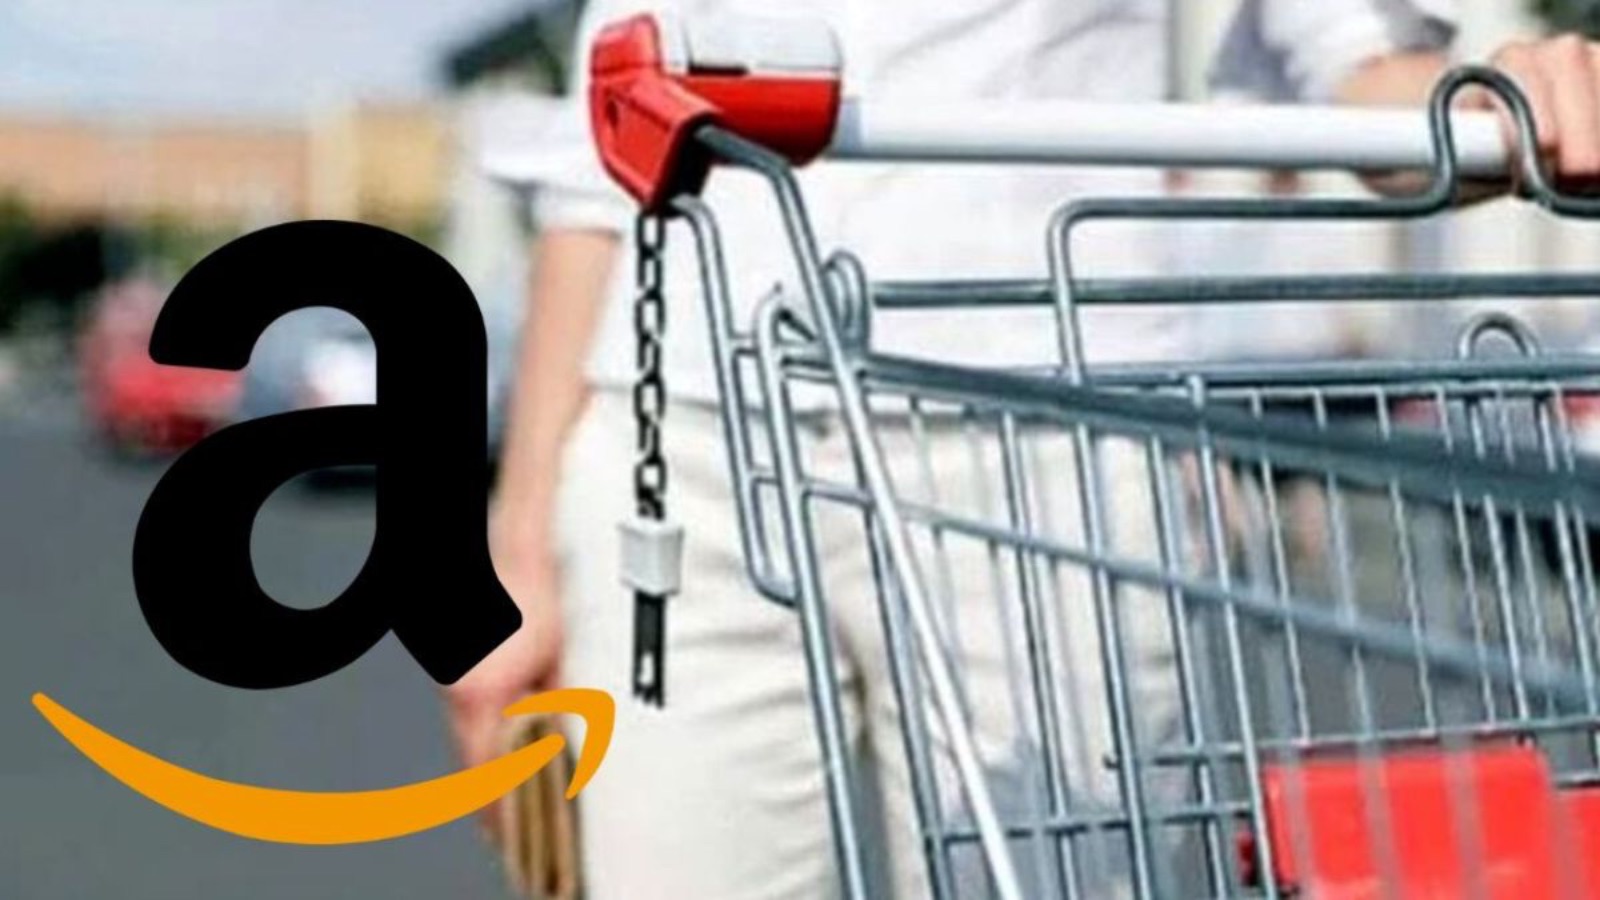 Amazon distrugge Unieuro, offerte segrete tutte disponibili 